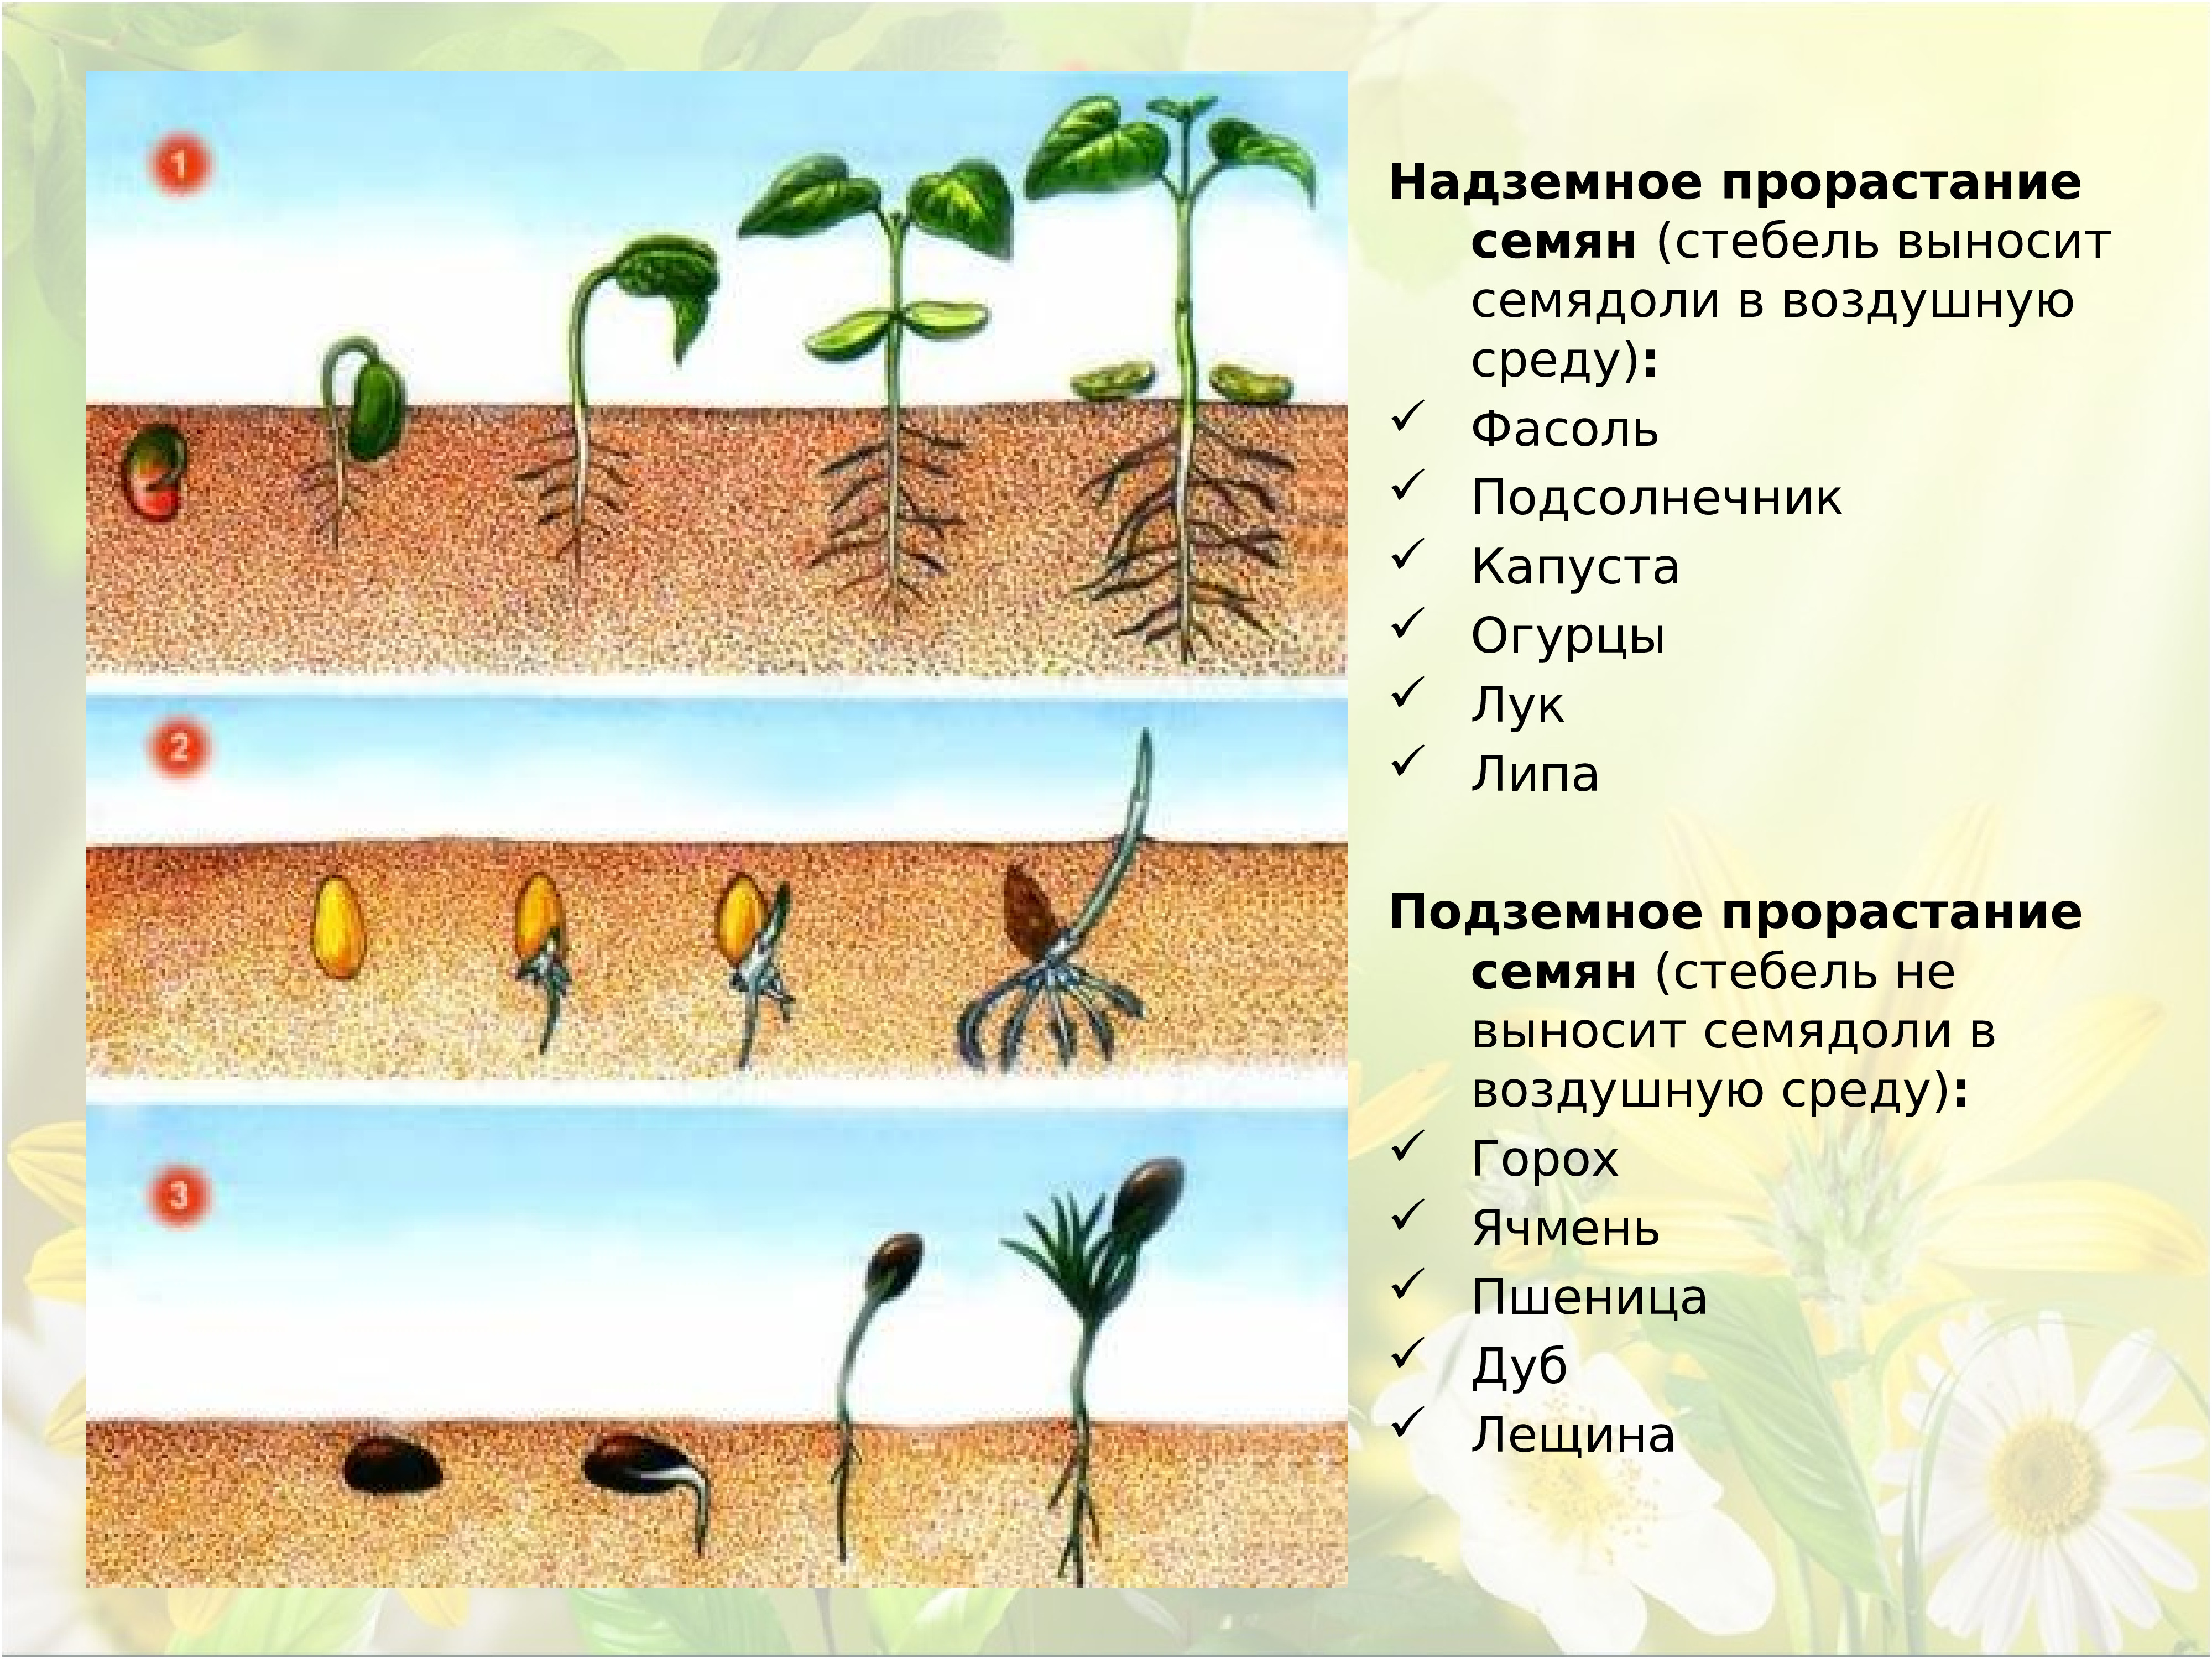 Установите последовательность развития растений из семени